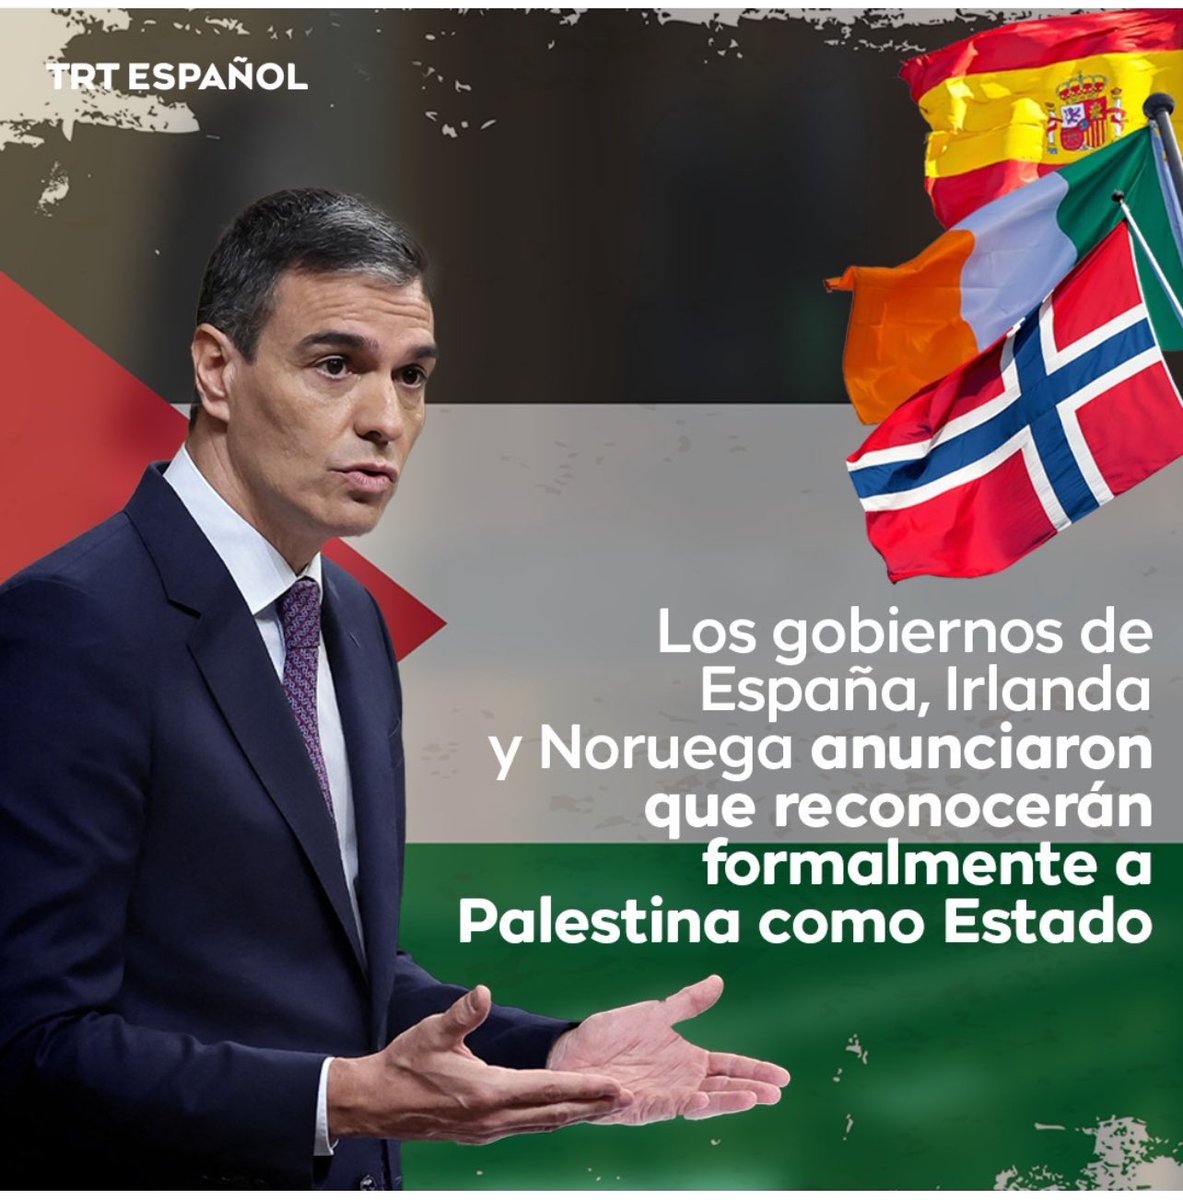 “Gobiernos de España, Irlanda y Noruega anunciaron que reconocerán formalmente a Palestina como Estado”
El gobierno de Israel ha logrado con su barbarie que el mundo esté al lado del más débil, del lado correcto de la historia, lo que nunca dudó el Pte @FernandoHinca01